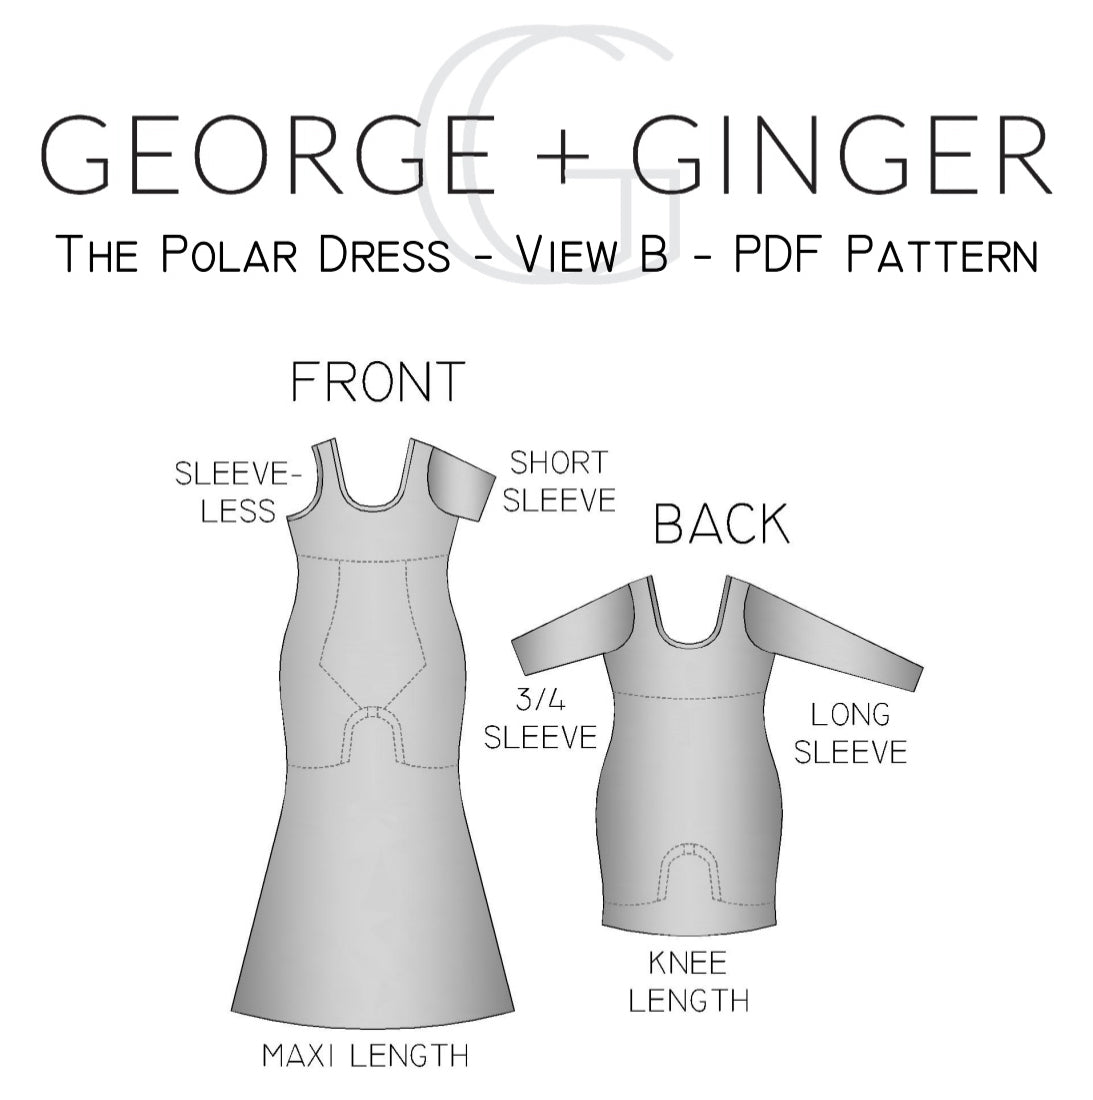 The Polar Dress - View B - PDF Sewing Pattern